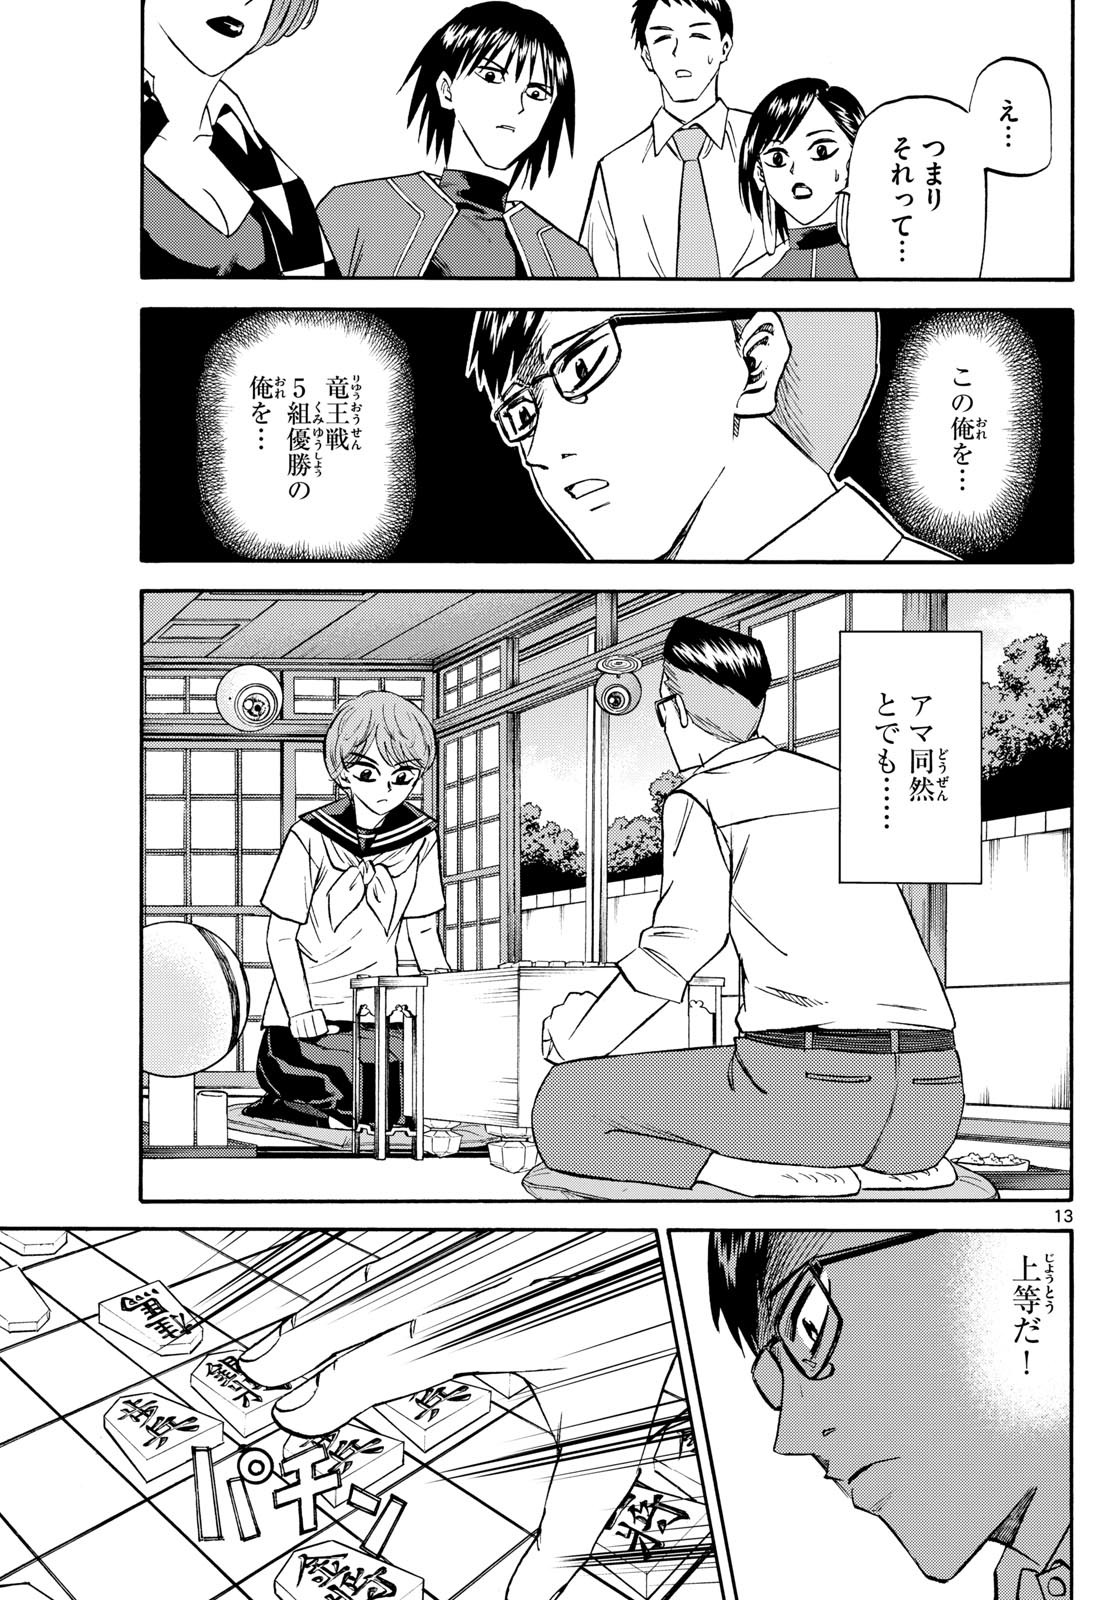 Ryu-to-Ichigo - Chapter 196 - Page 13